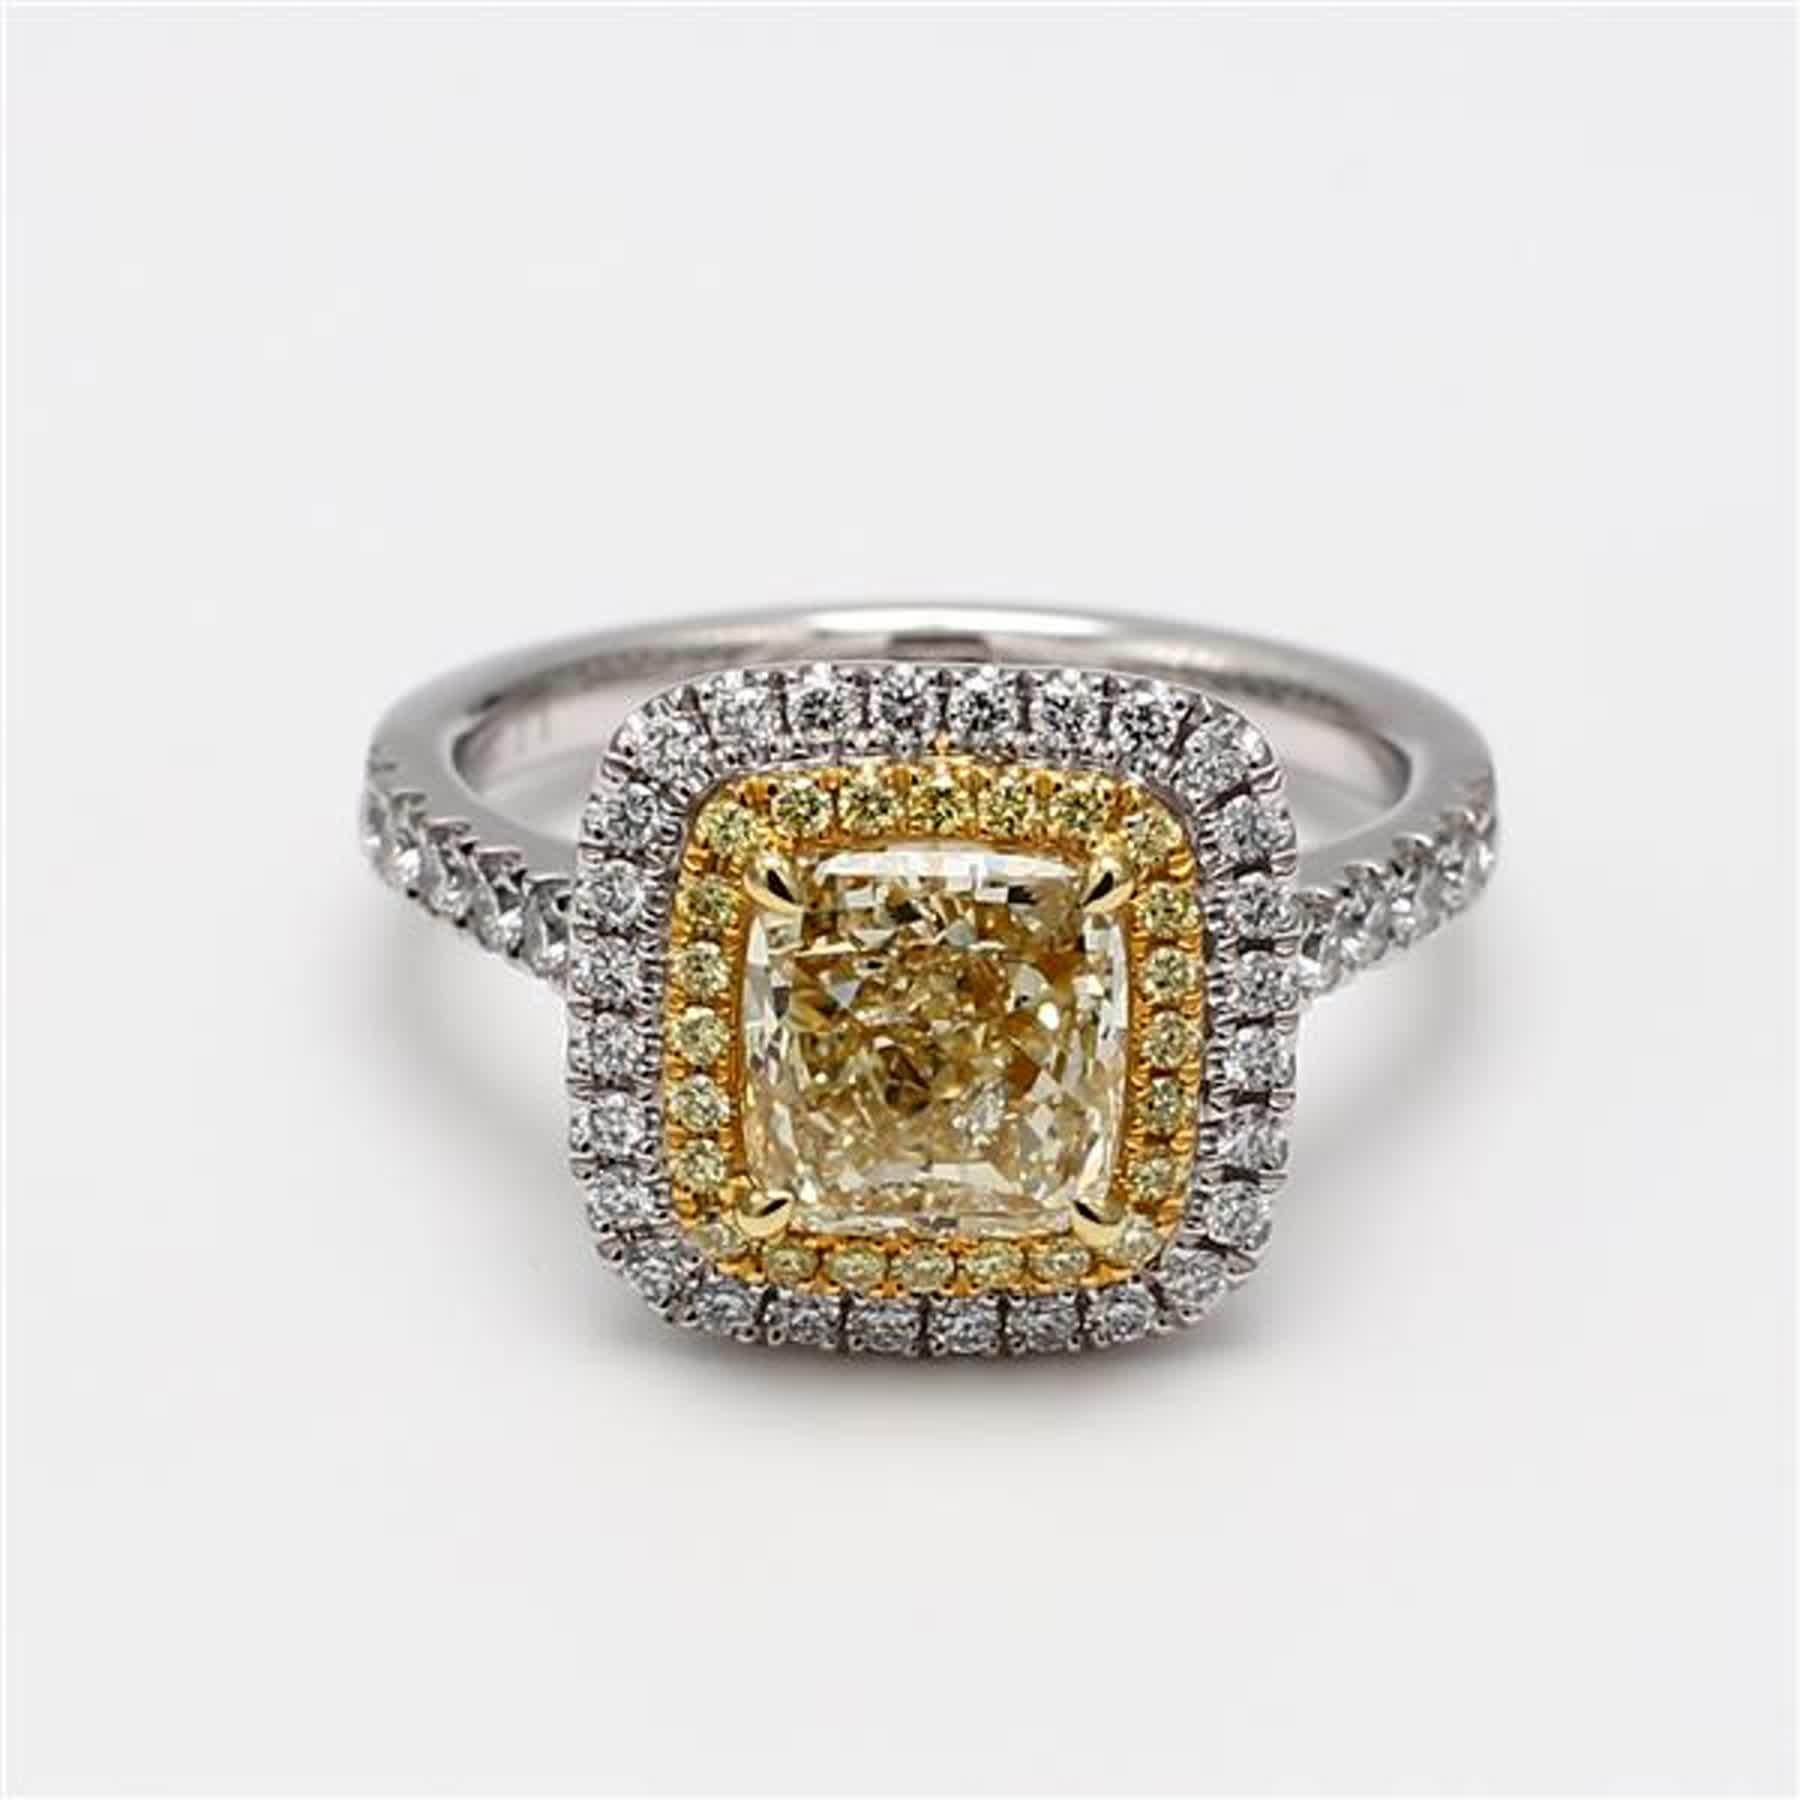 Der klassische GIA-zertifizierte Diamantring von RareGemWorld. Montiert in einer schönen Fassung aus 18 Karat Gelb- und Weißgold mit einem natürlichen gelben Diamanten im Kissenschliff. Der gelbe Diamant ist umgeben von runden natürlichen gelben